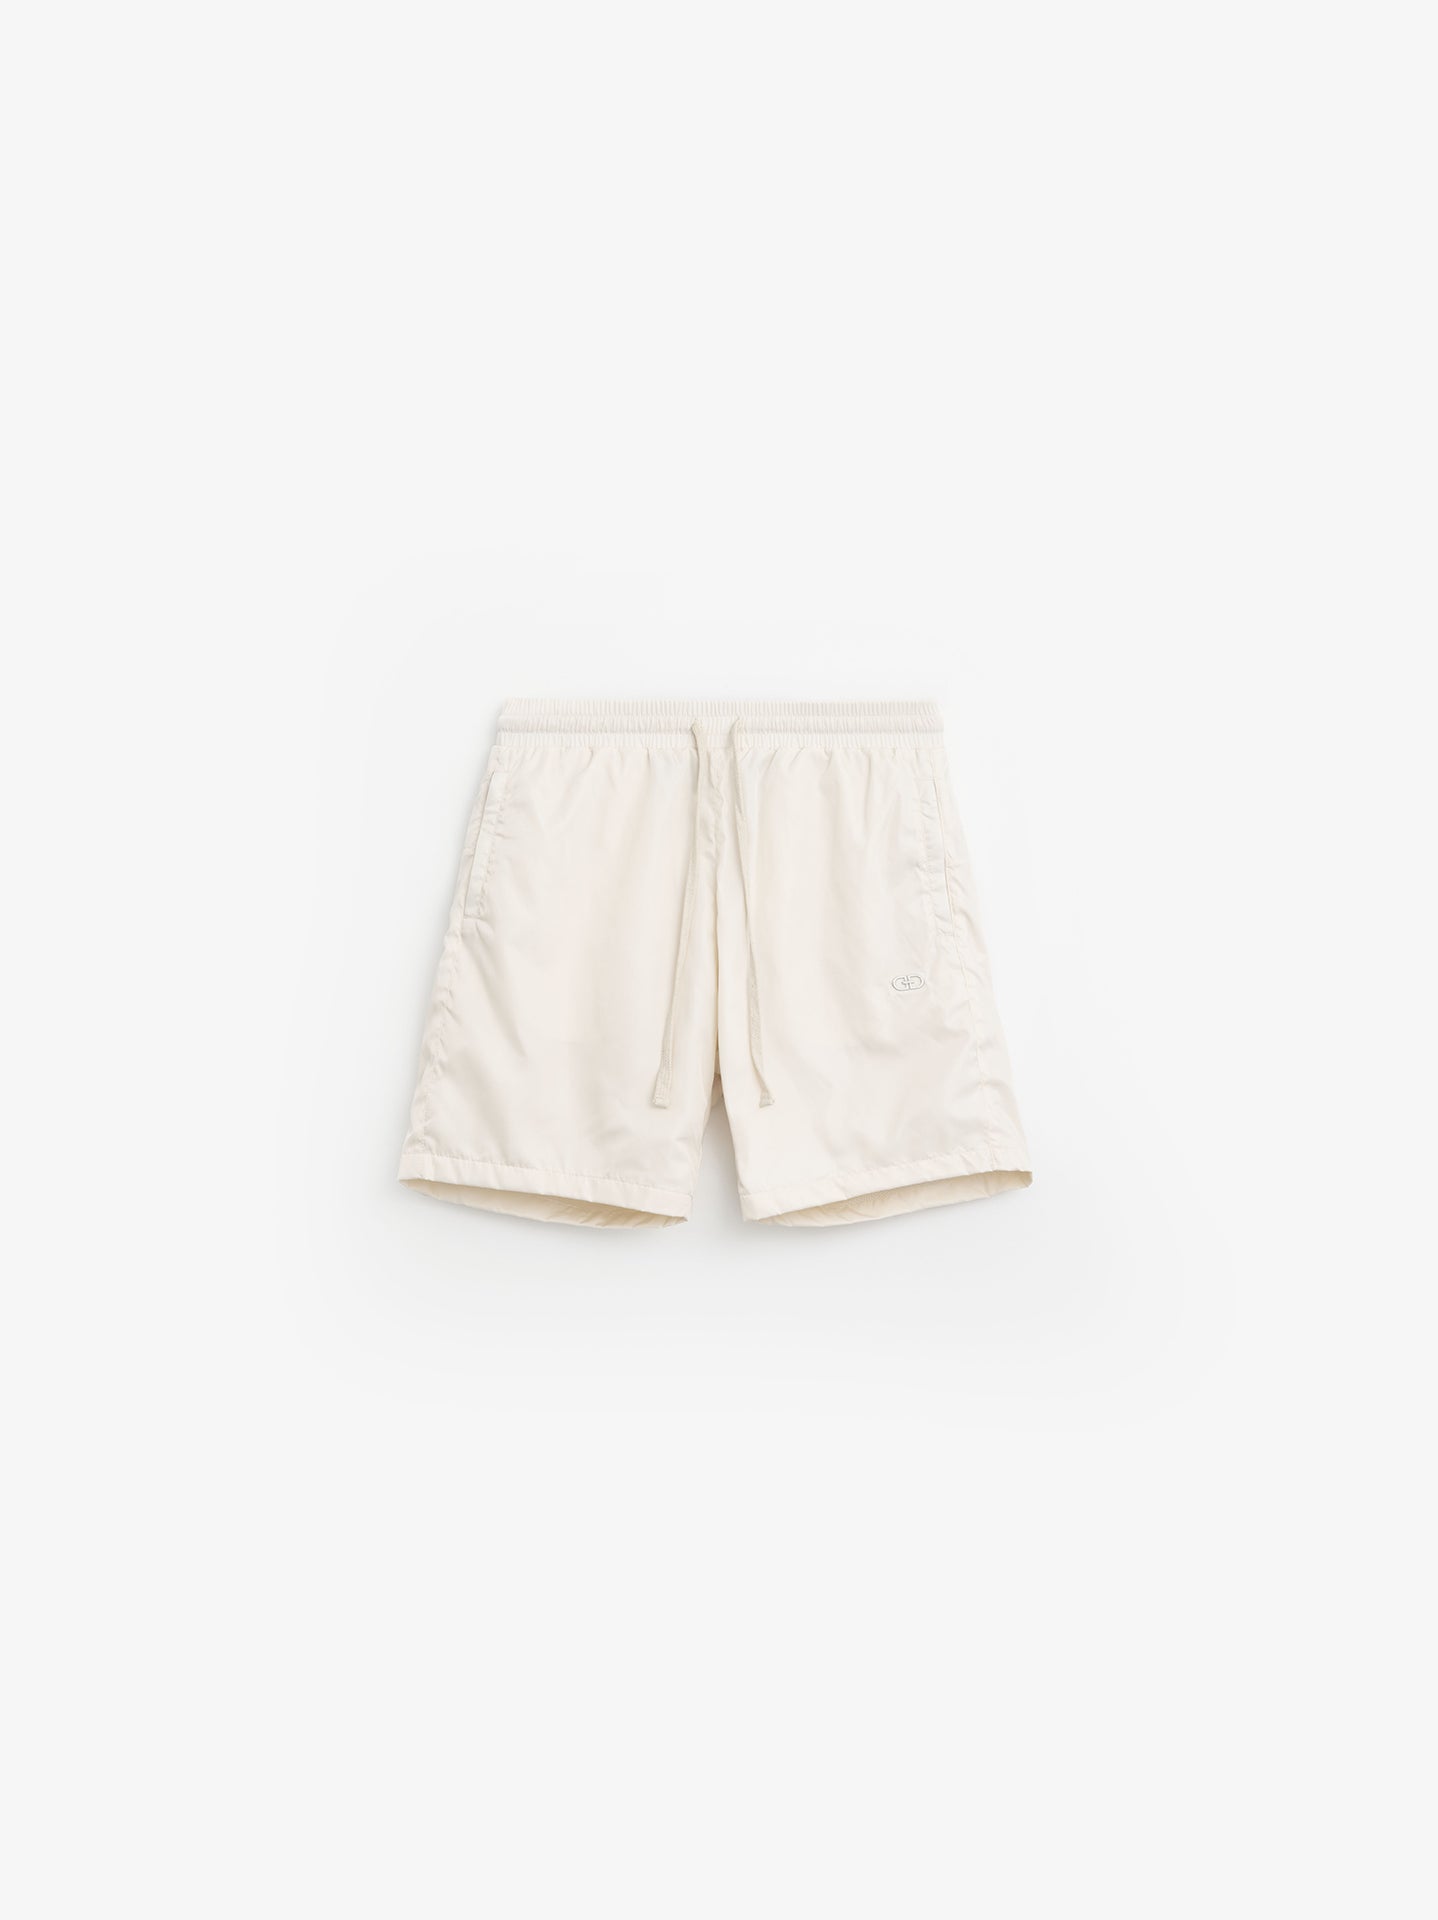 Track Shorts - Cream White